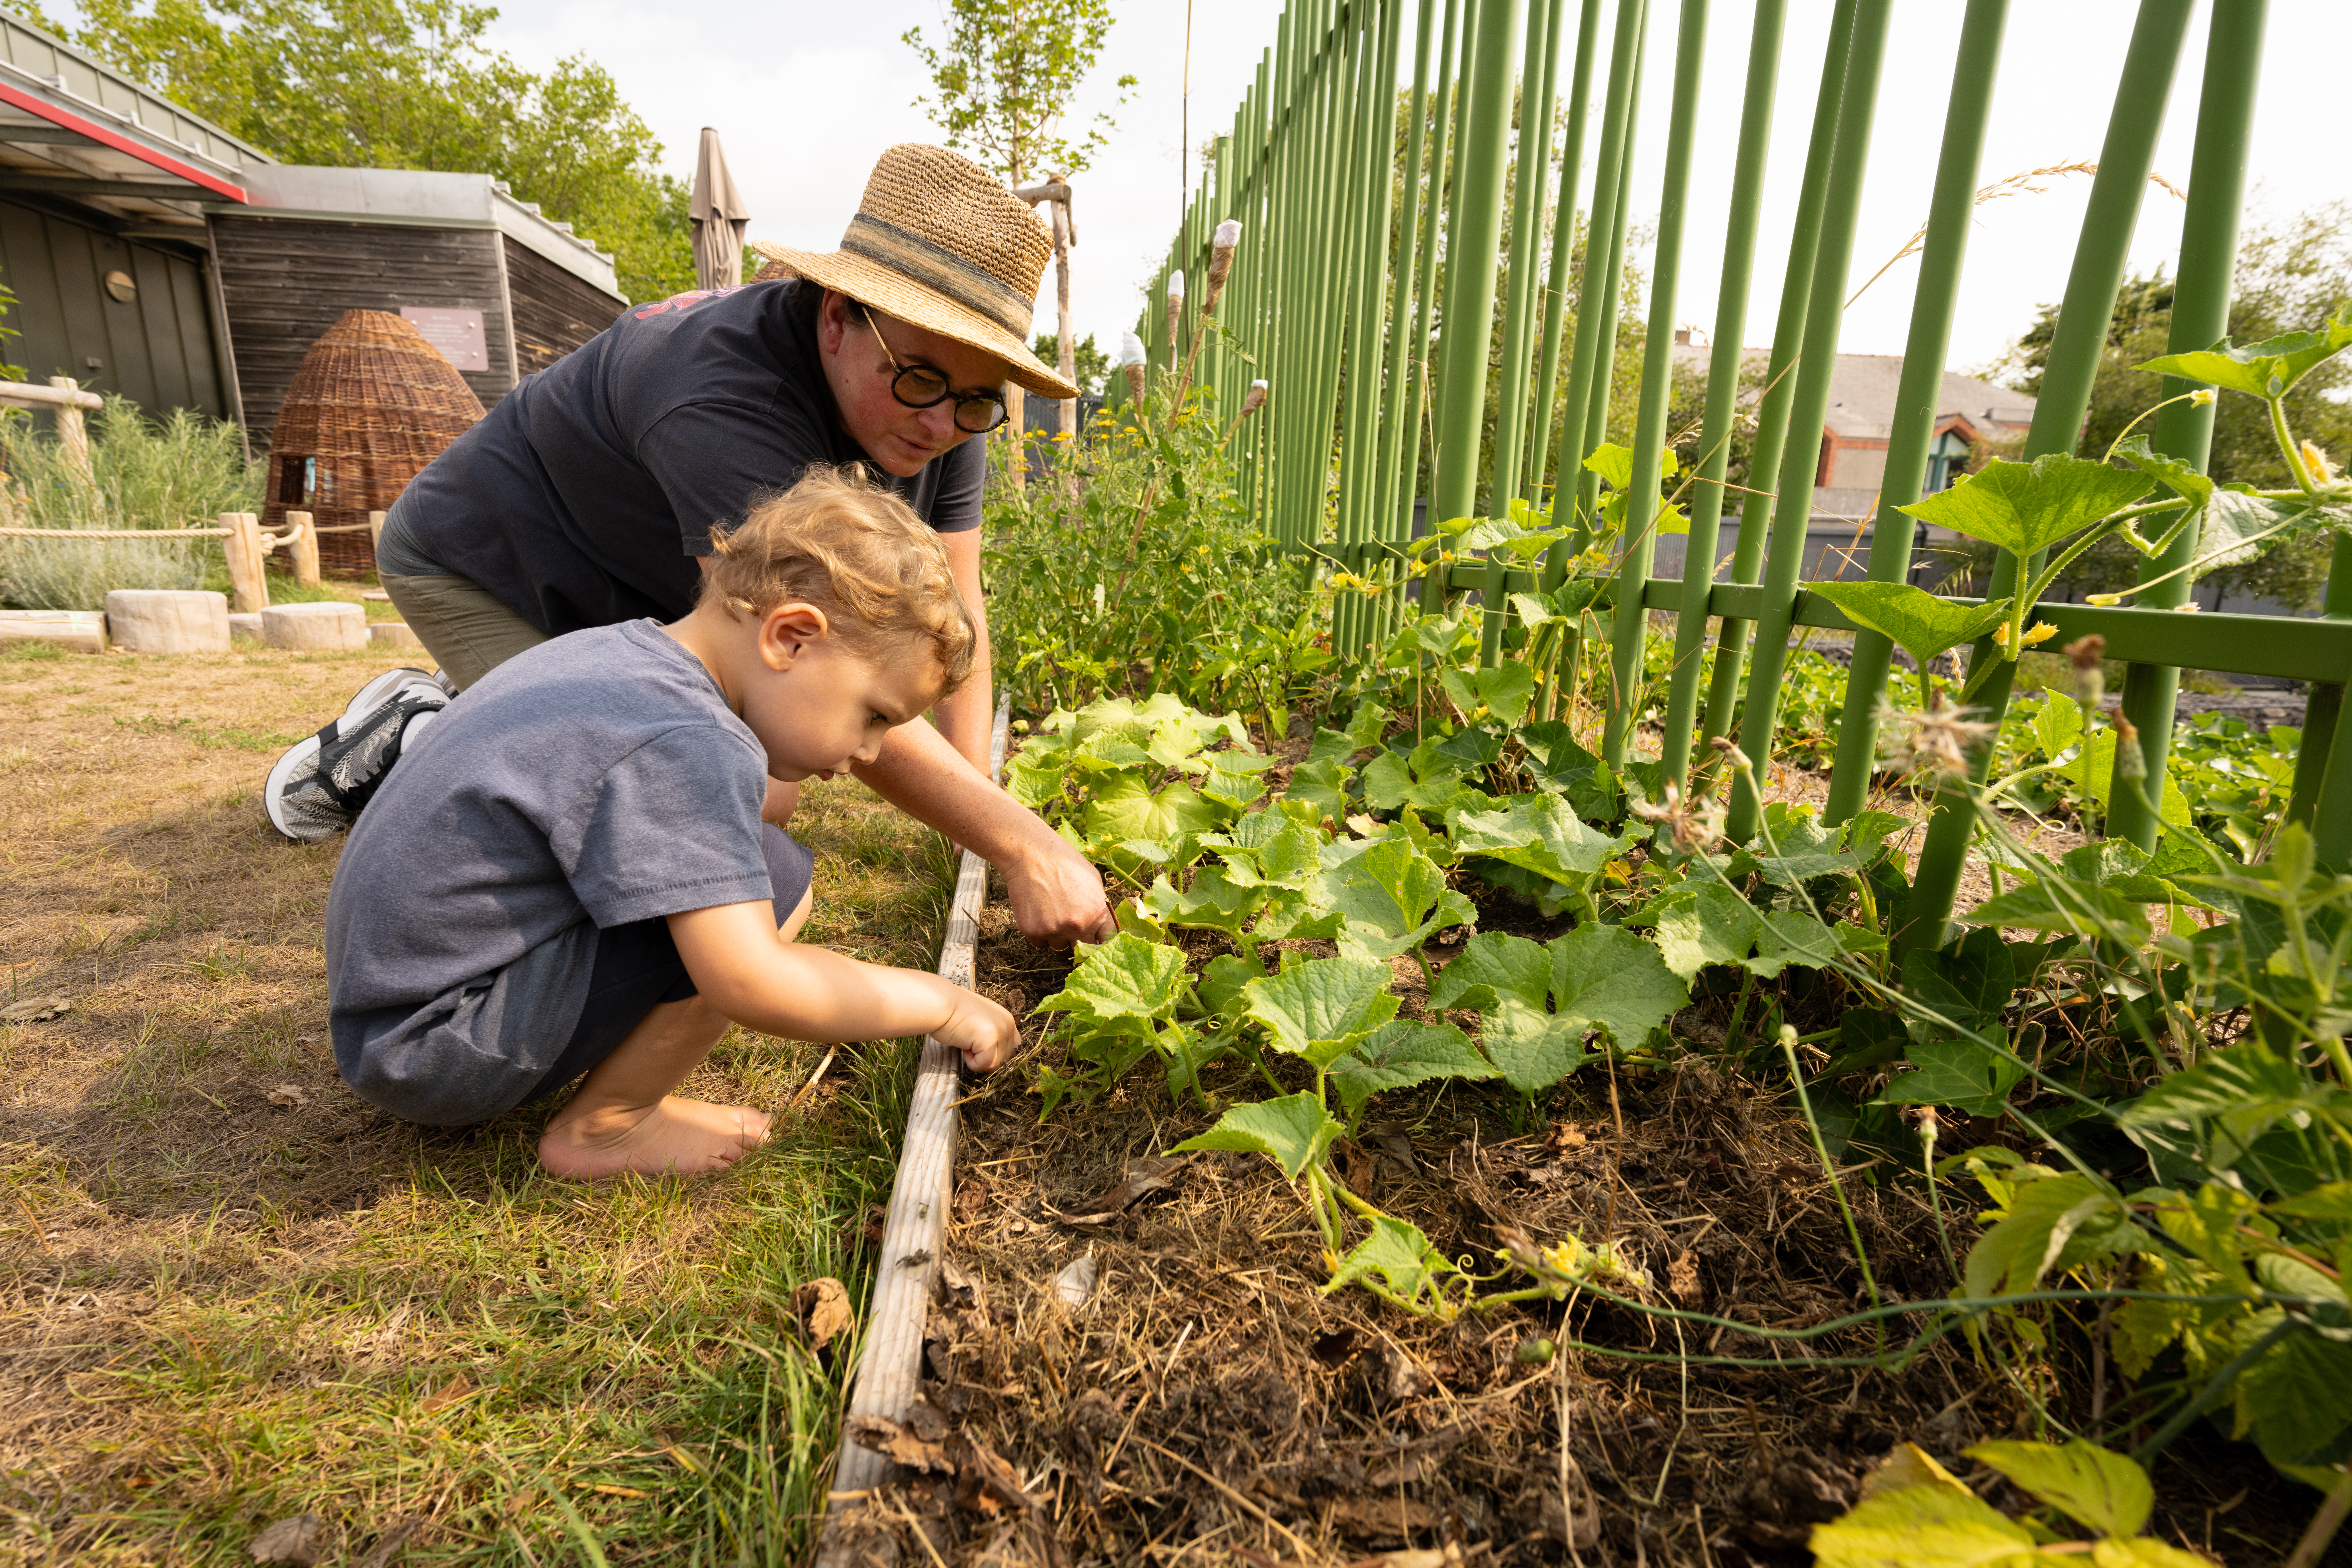 Un jeune enfant découvre des plantations de légumes dans sa cours de récréation, en compagnie de son enseignante.